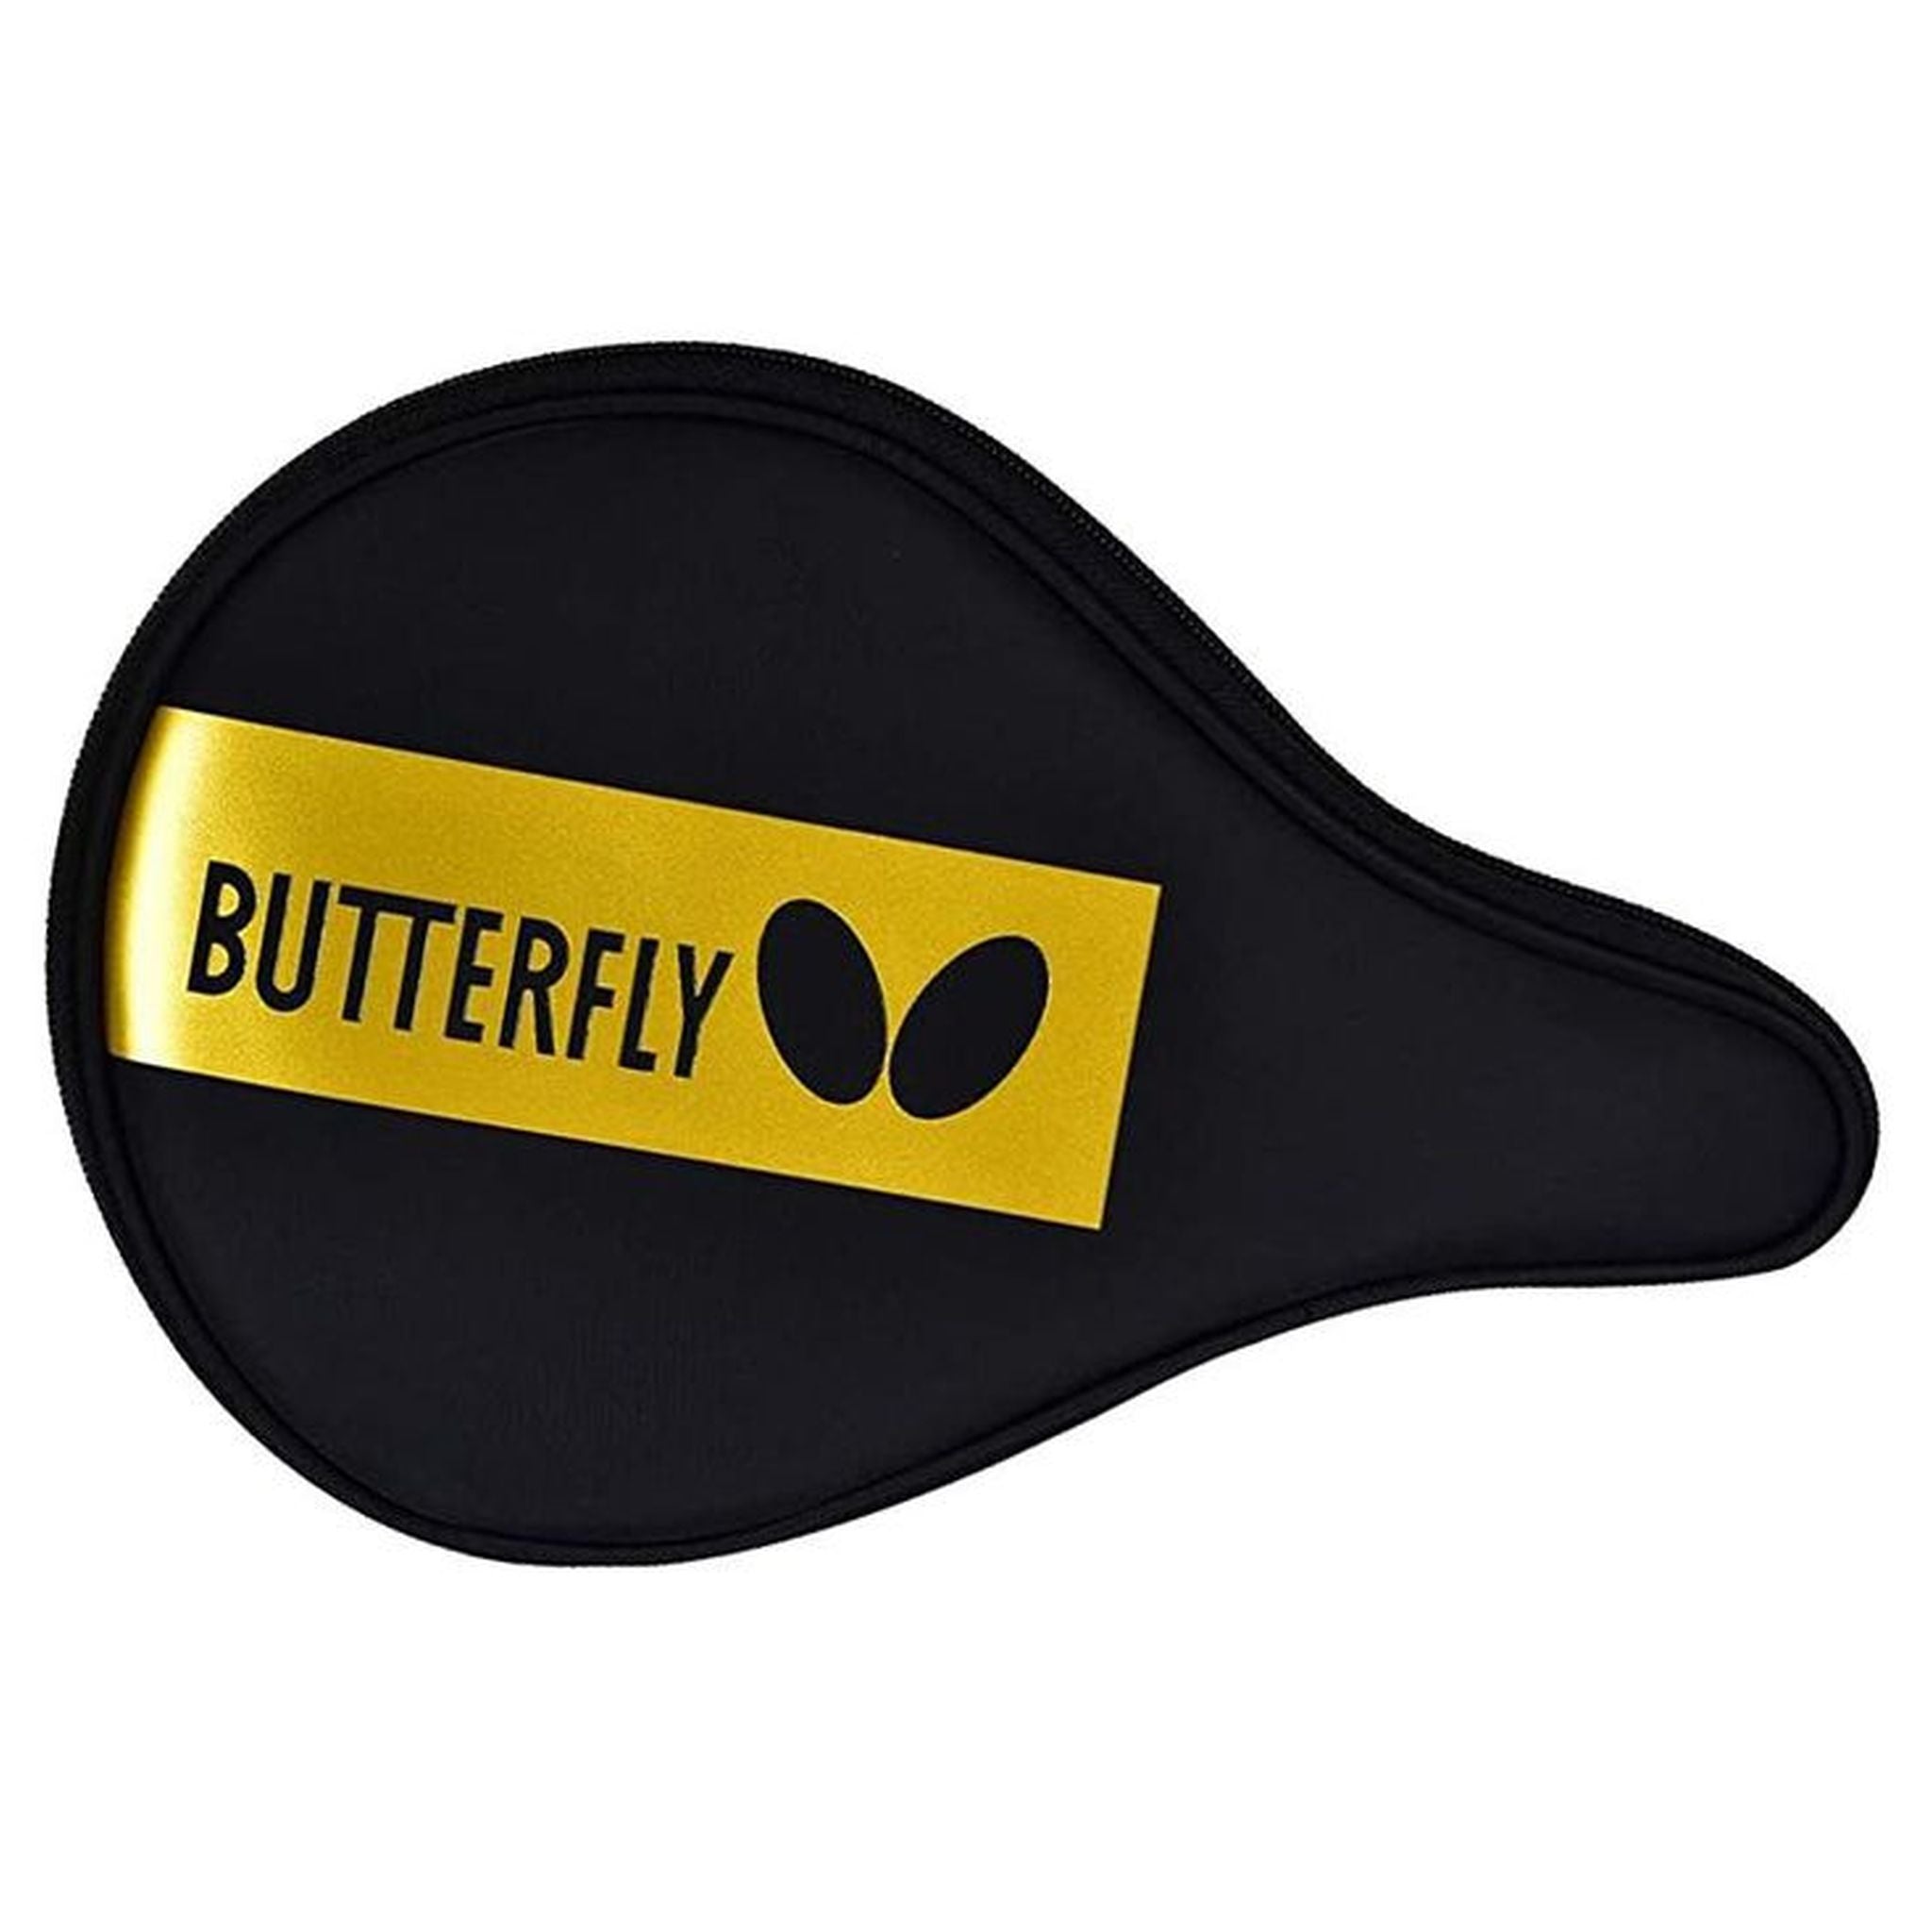 Butterfly BD Single Table Tennis Bat Case